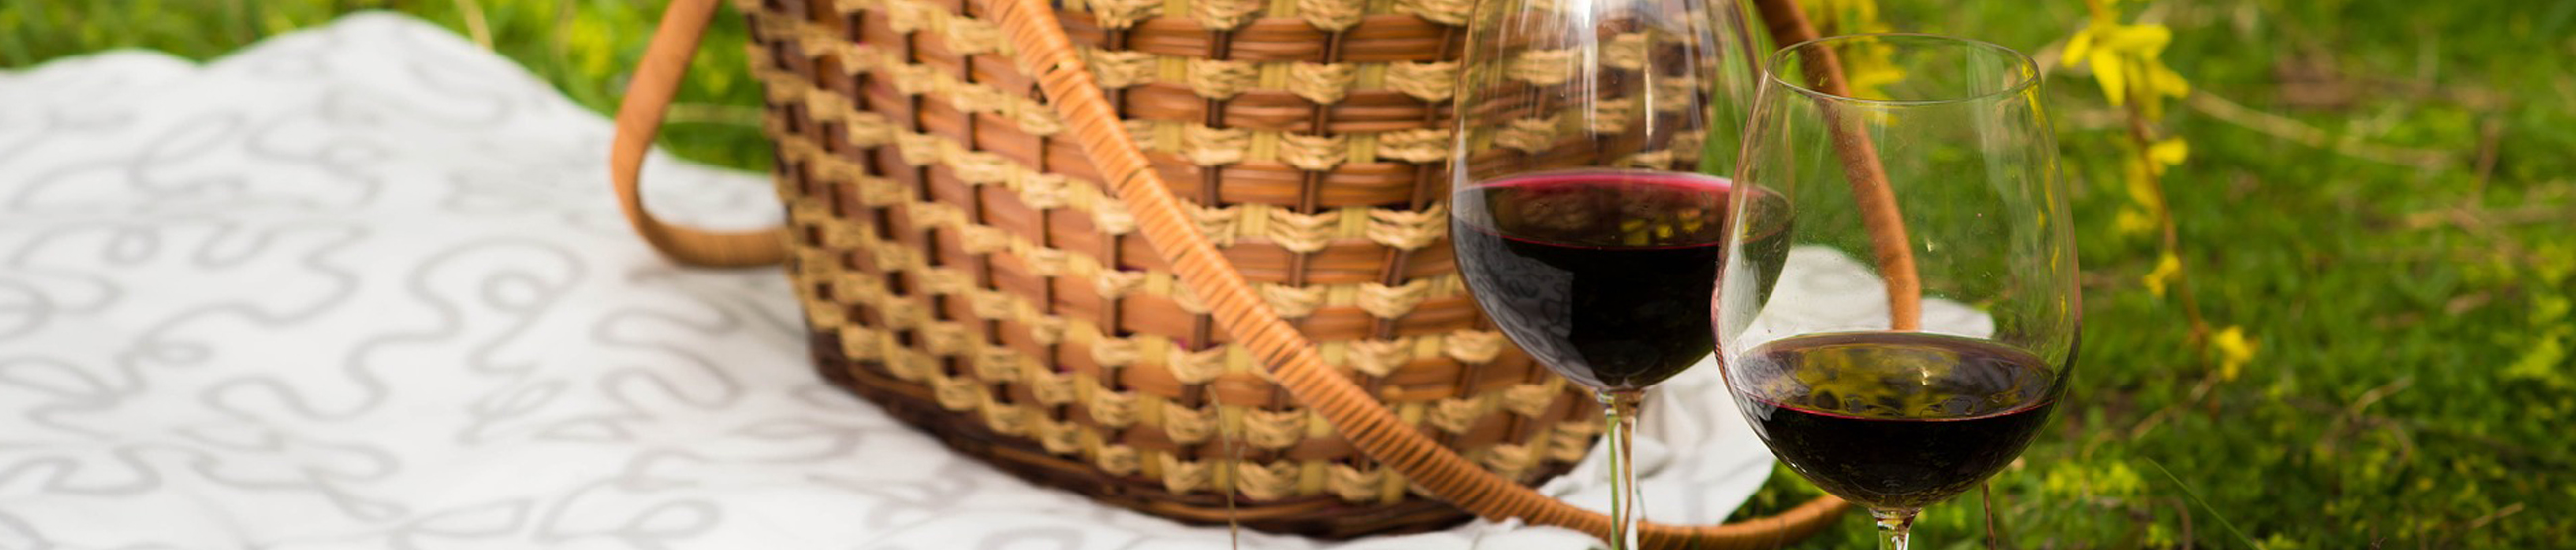 entete-wine-picnic